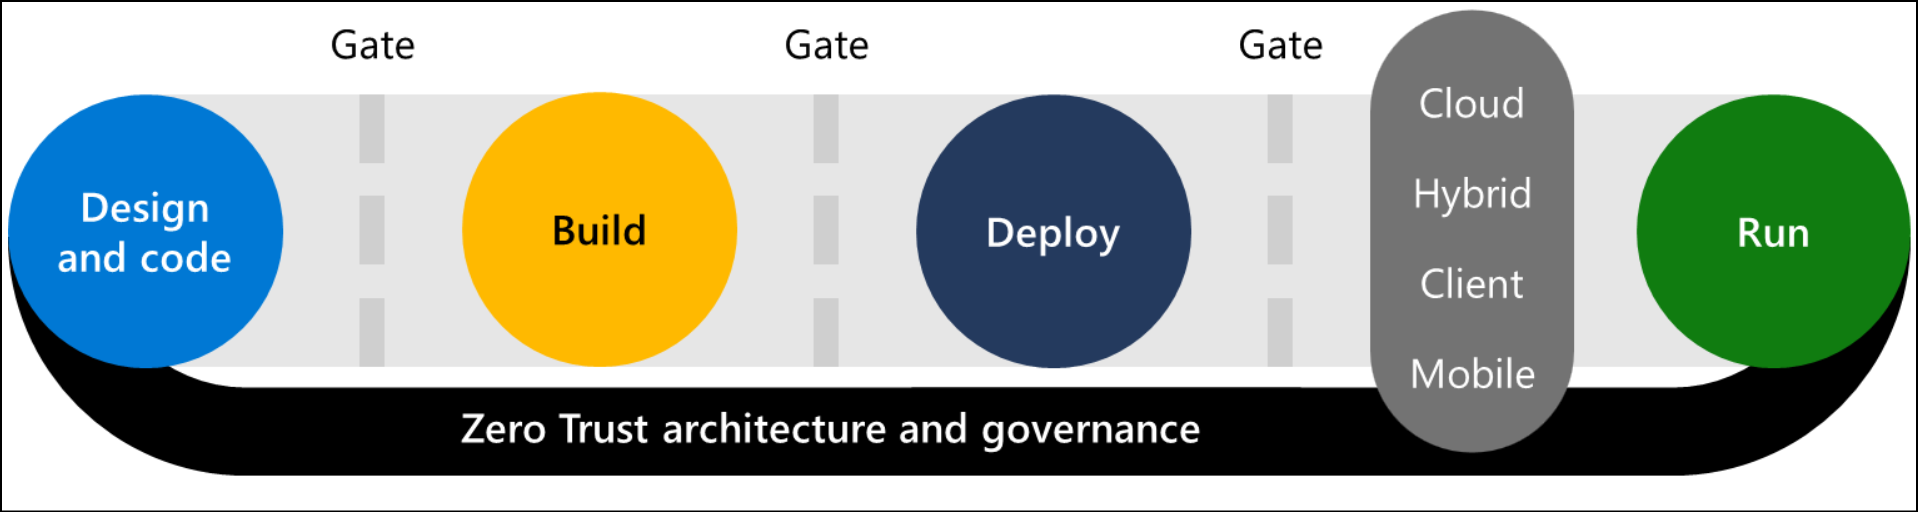 Diagramma del ciclo di vita dello sviluppo software con l'architettura Zero Trust e la sovrimpressione della governance.